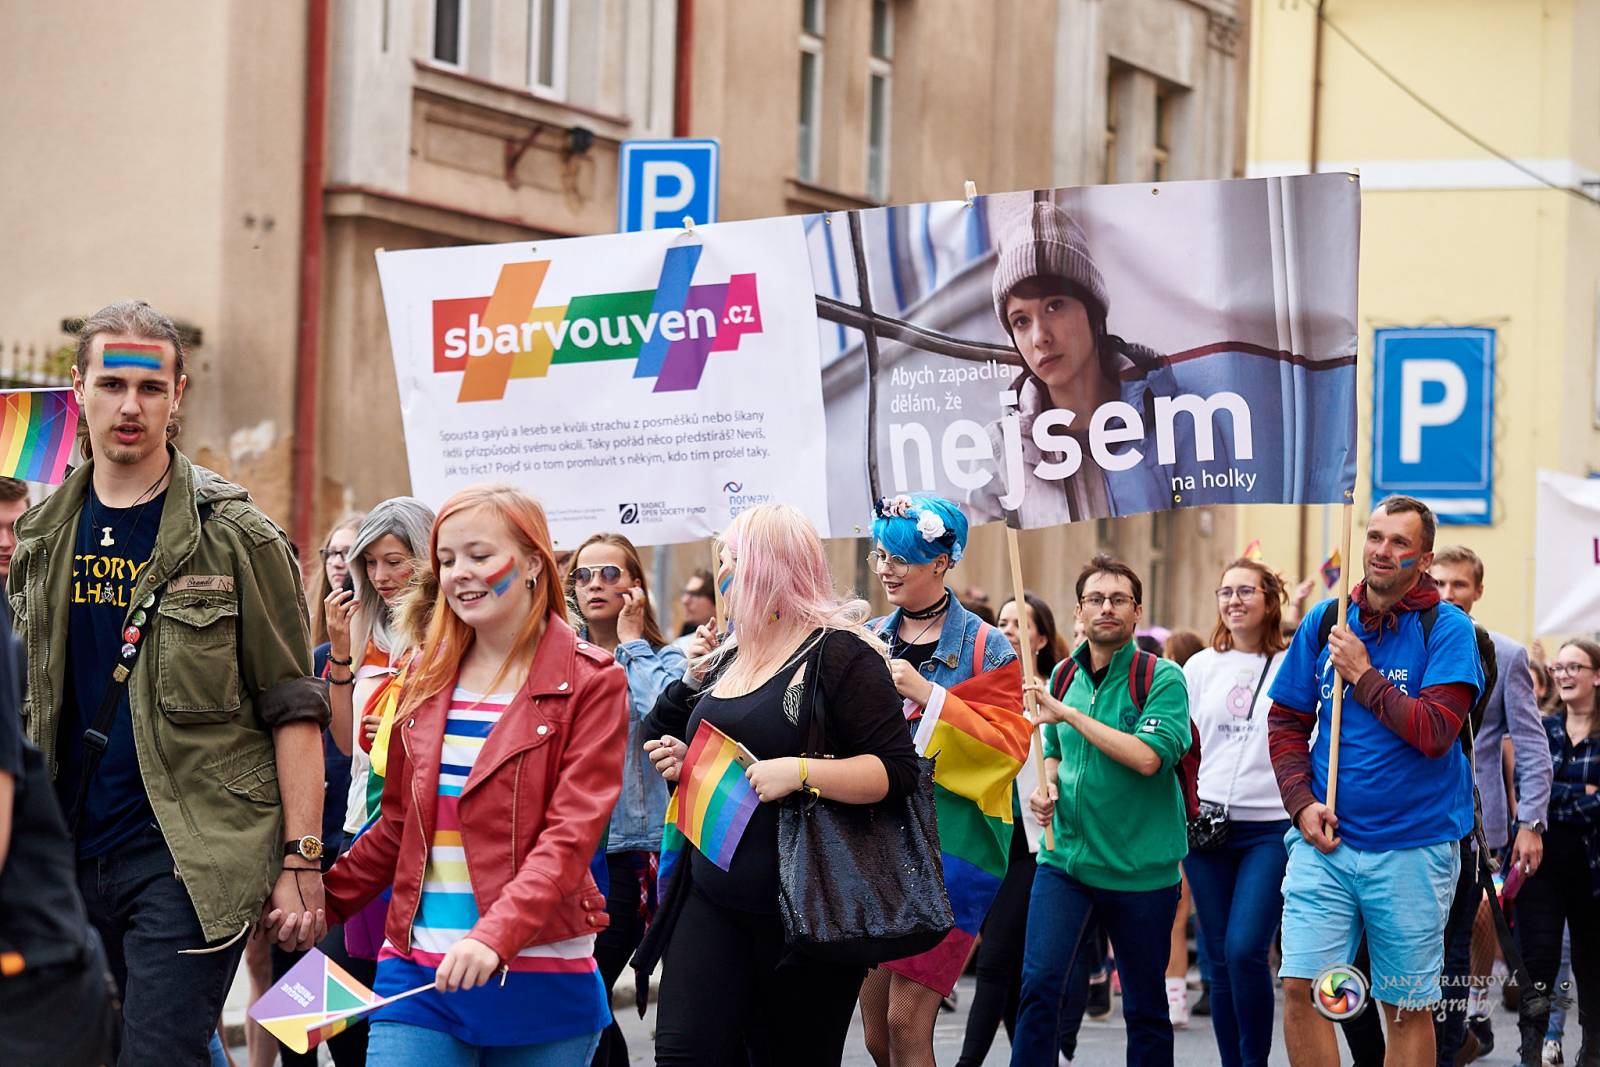 Pilsen Pride podruhé: Duhový průvod prošel Plzní, narušili ho demonstranti